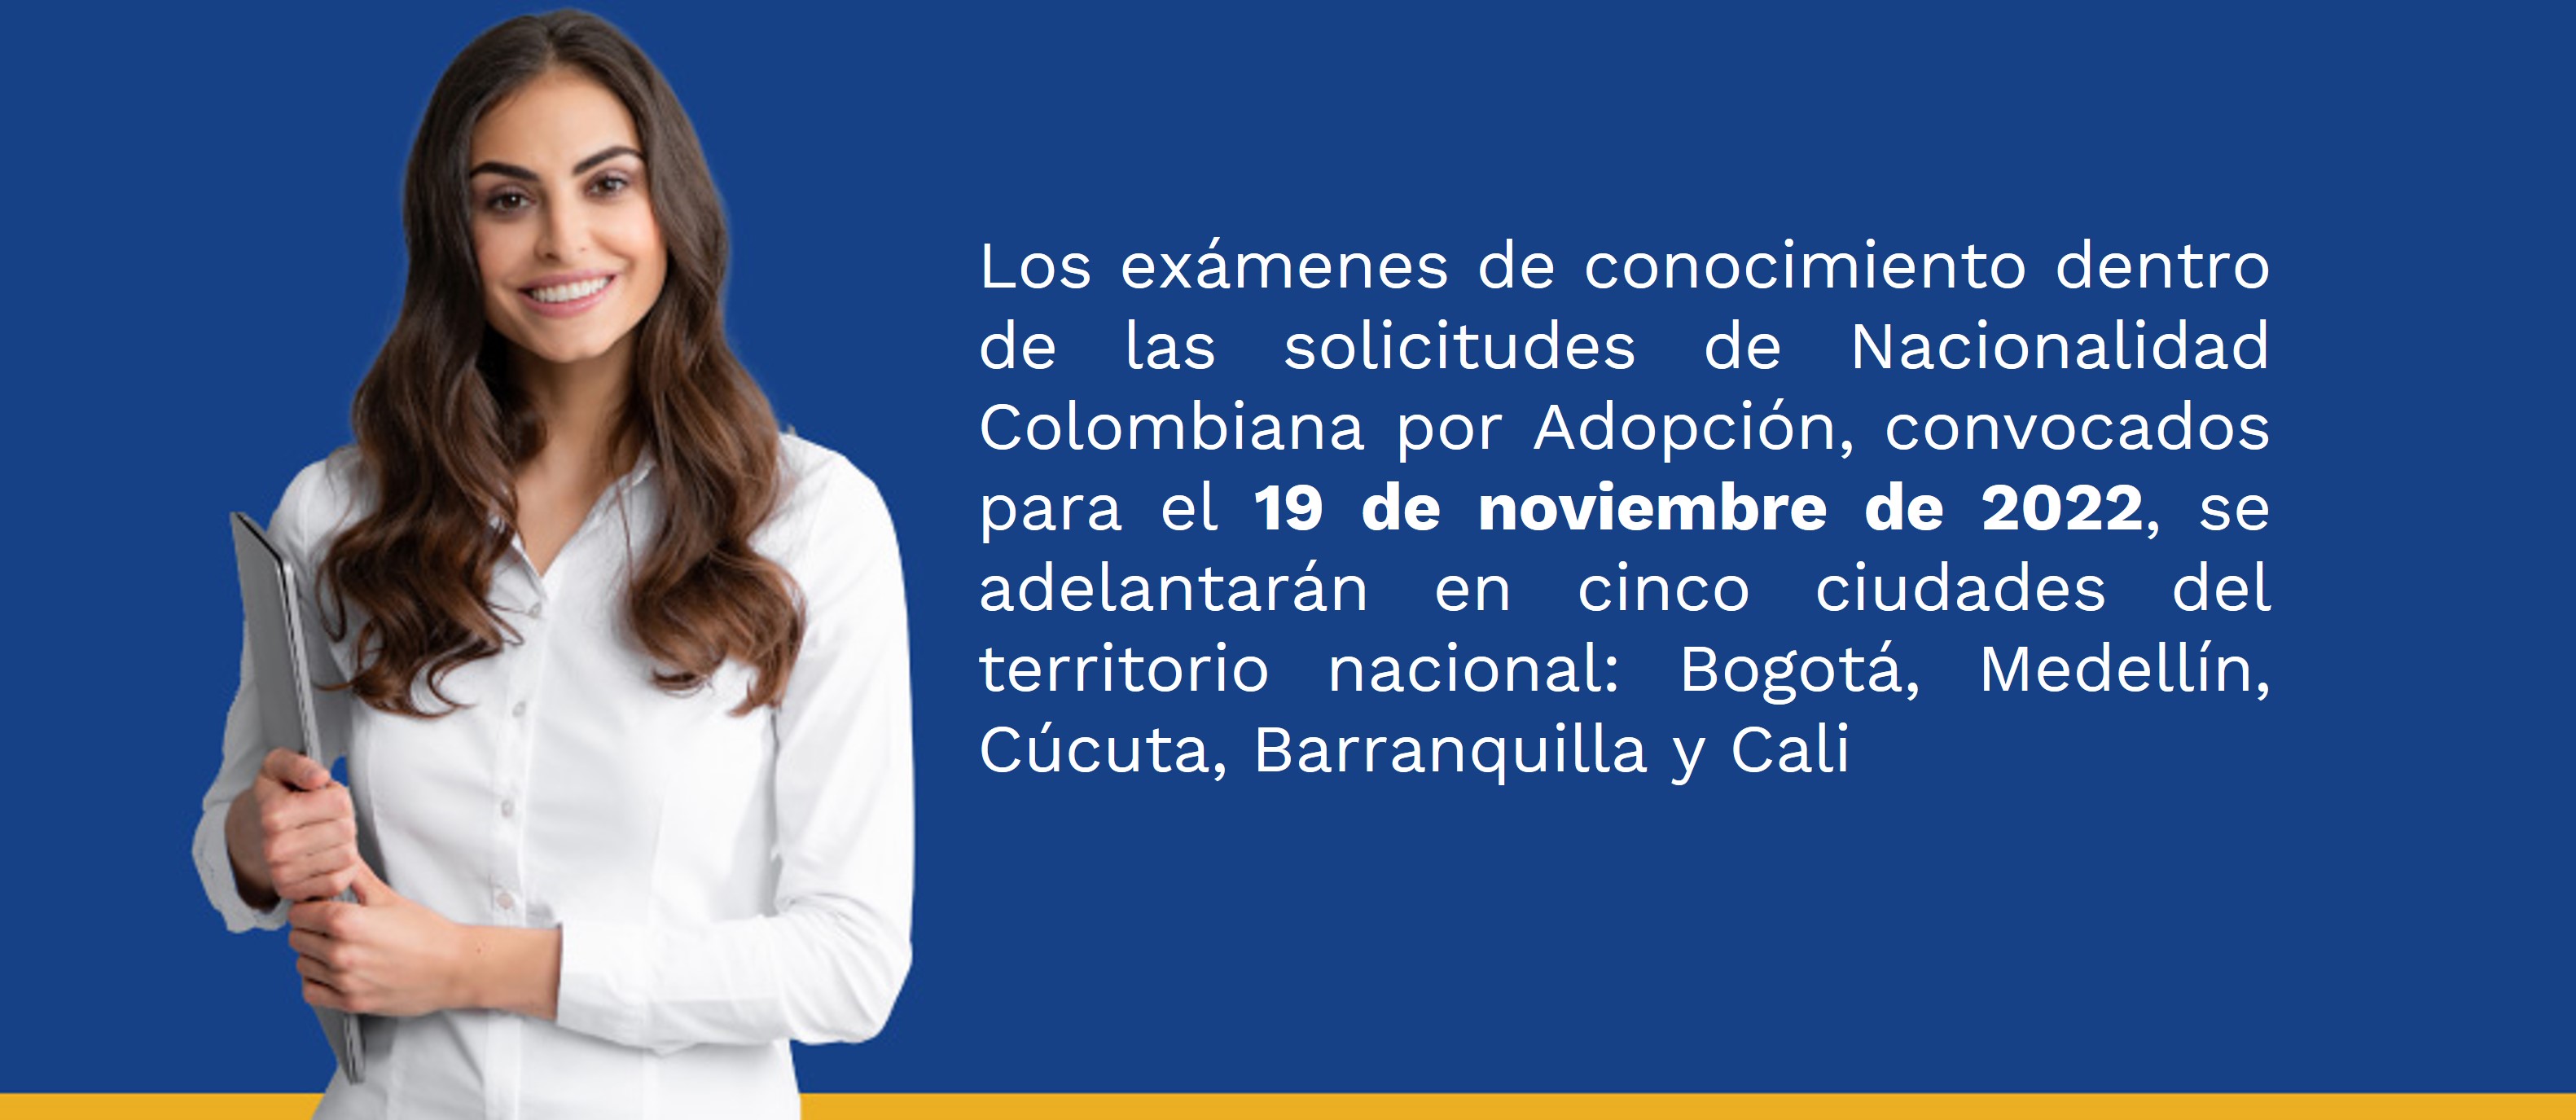 El Ministerio de Relaciones Exteriores realizará los exámenes de conocimiento del trámite de Nacionalidad Colombiana por Adopción el 19 de noviembre de 2022